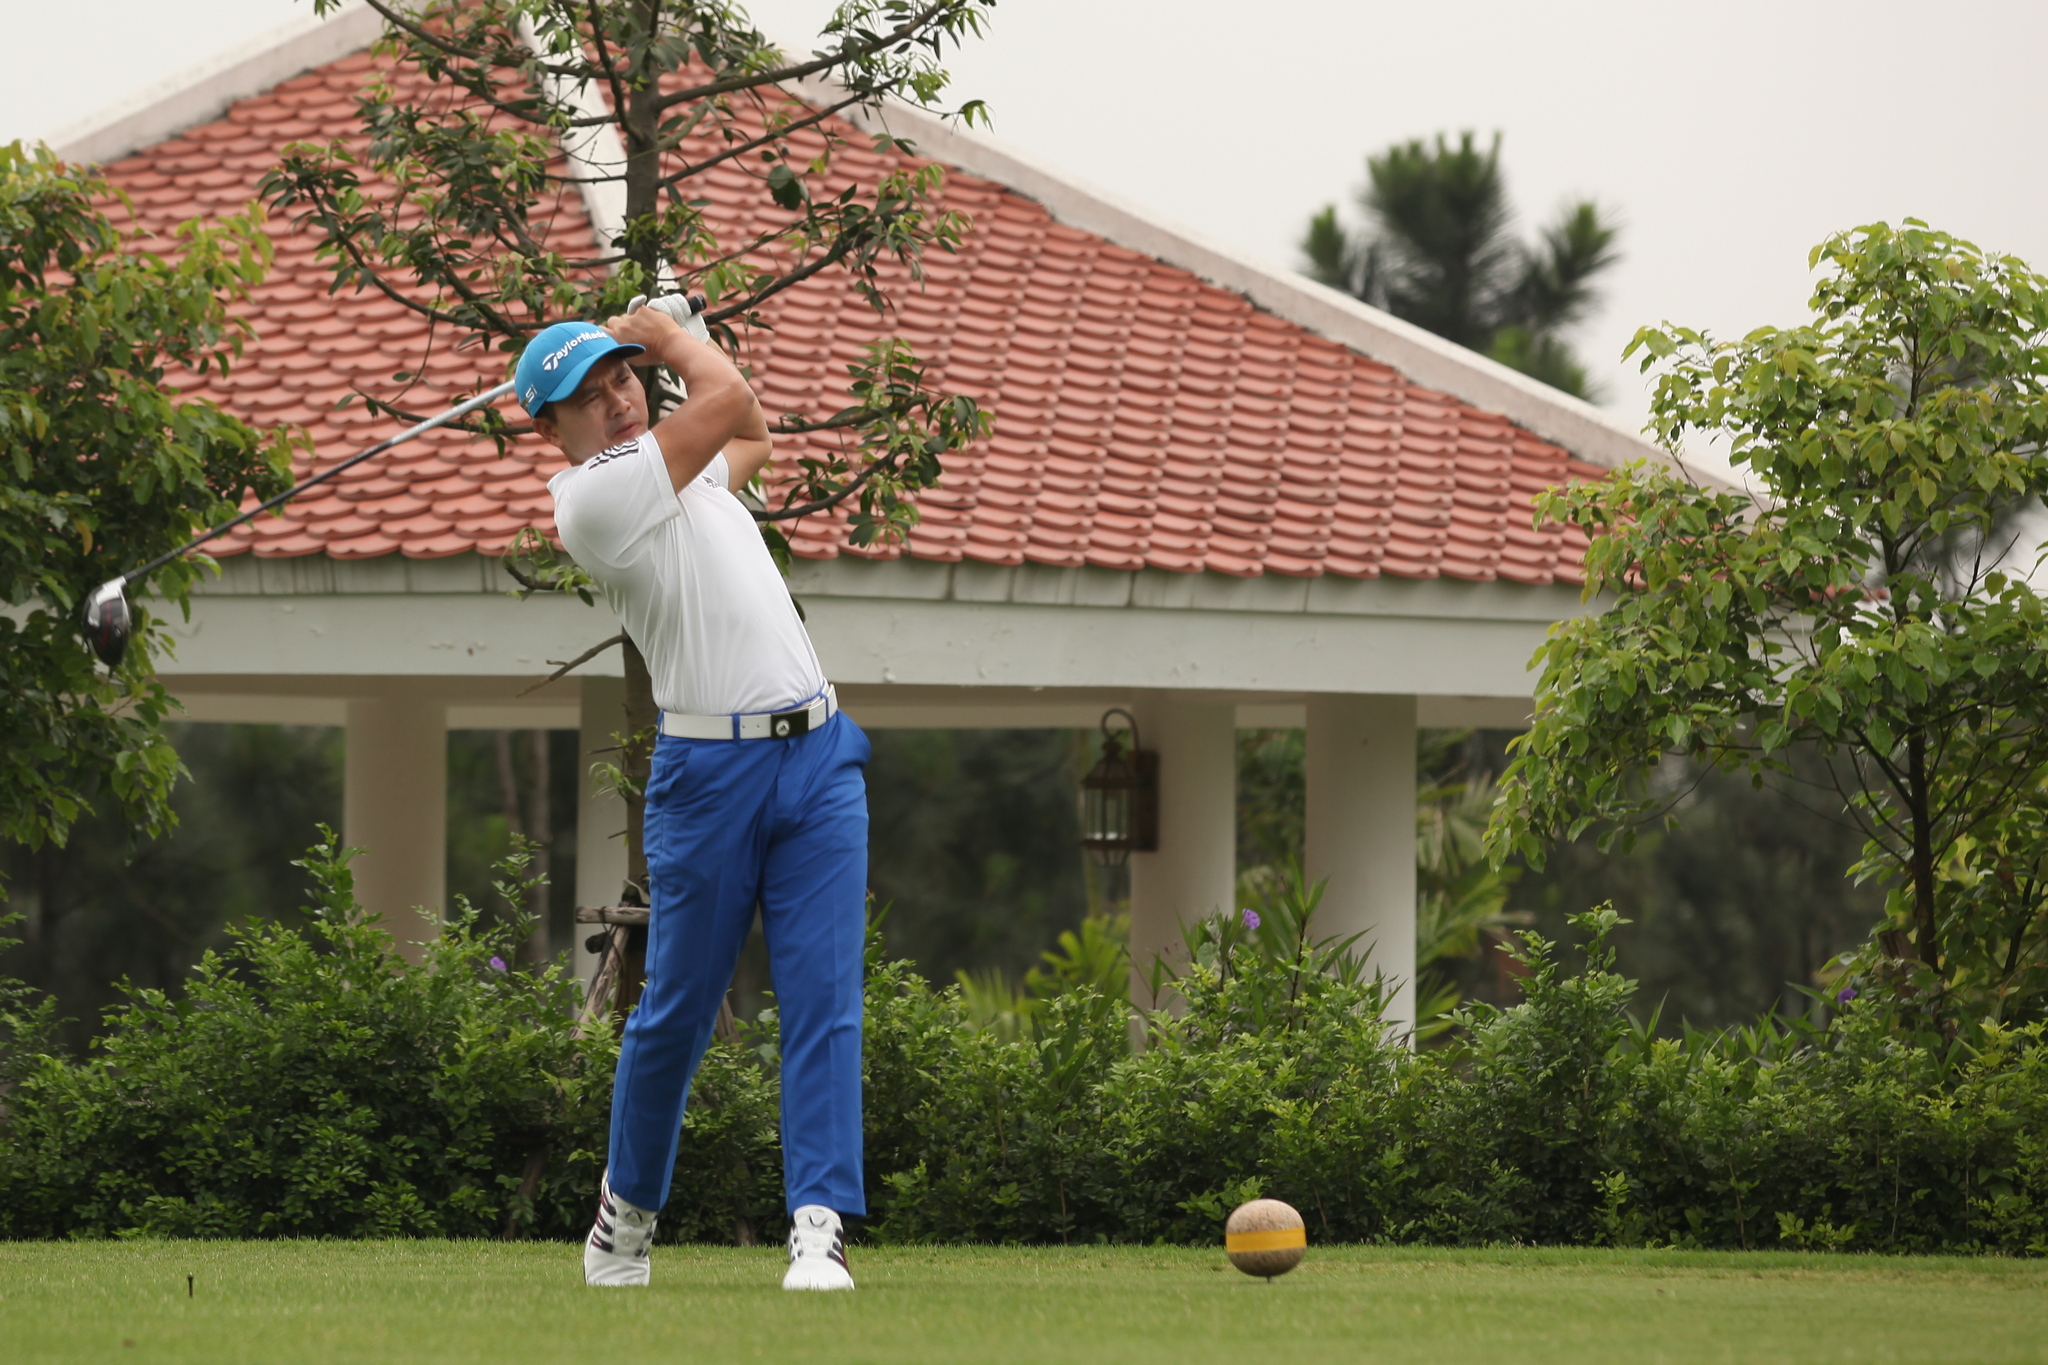 Vòng loại mở rộng ASIAD 18: Dương 6 gậy, golfer Thái Trung Hiếu tạm dẫn đầu miền Bắc